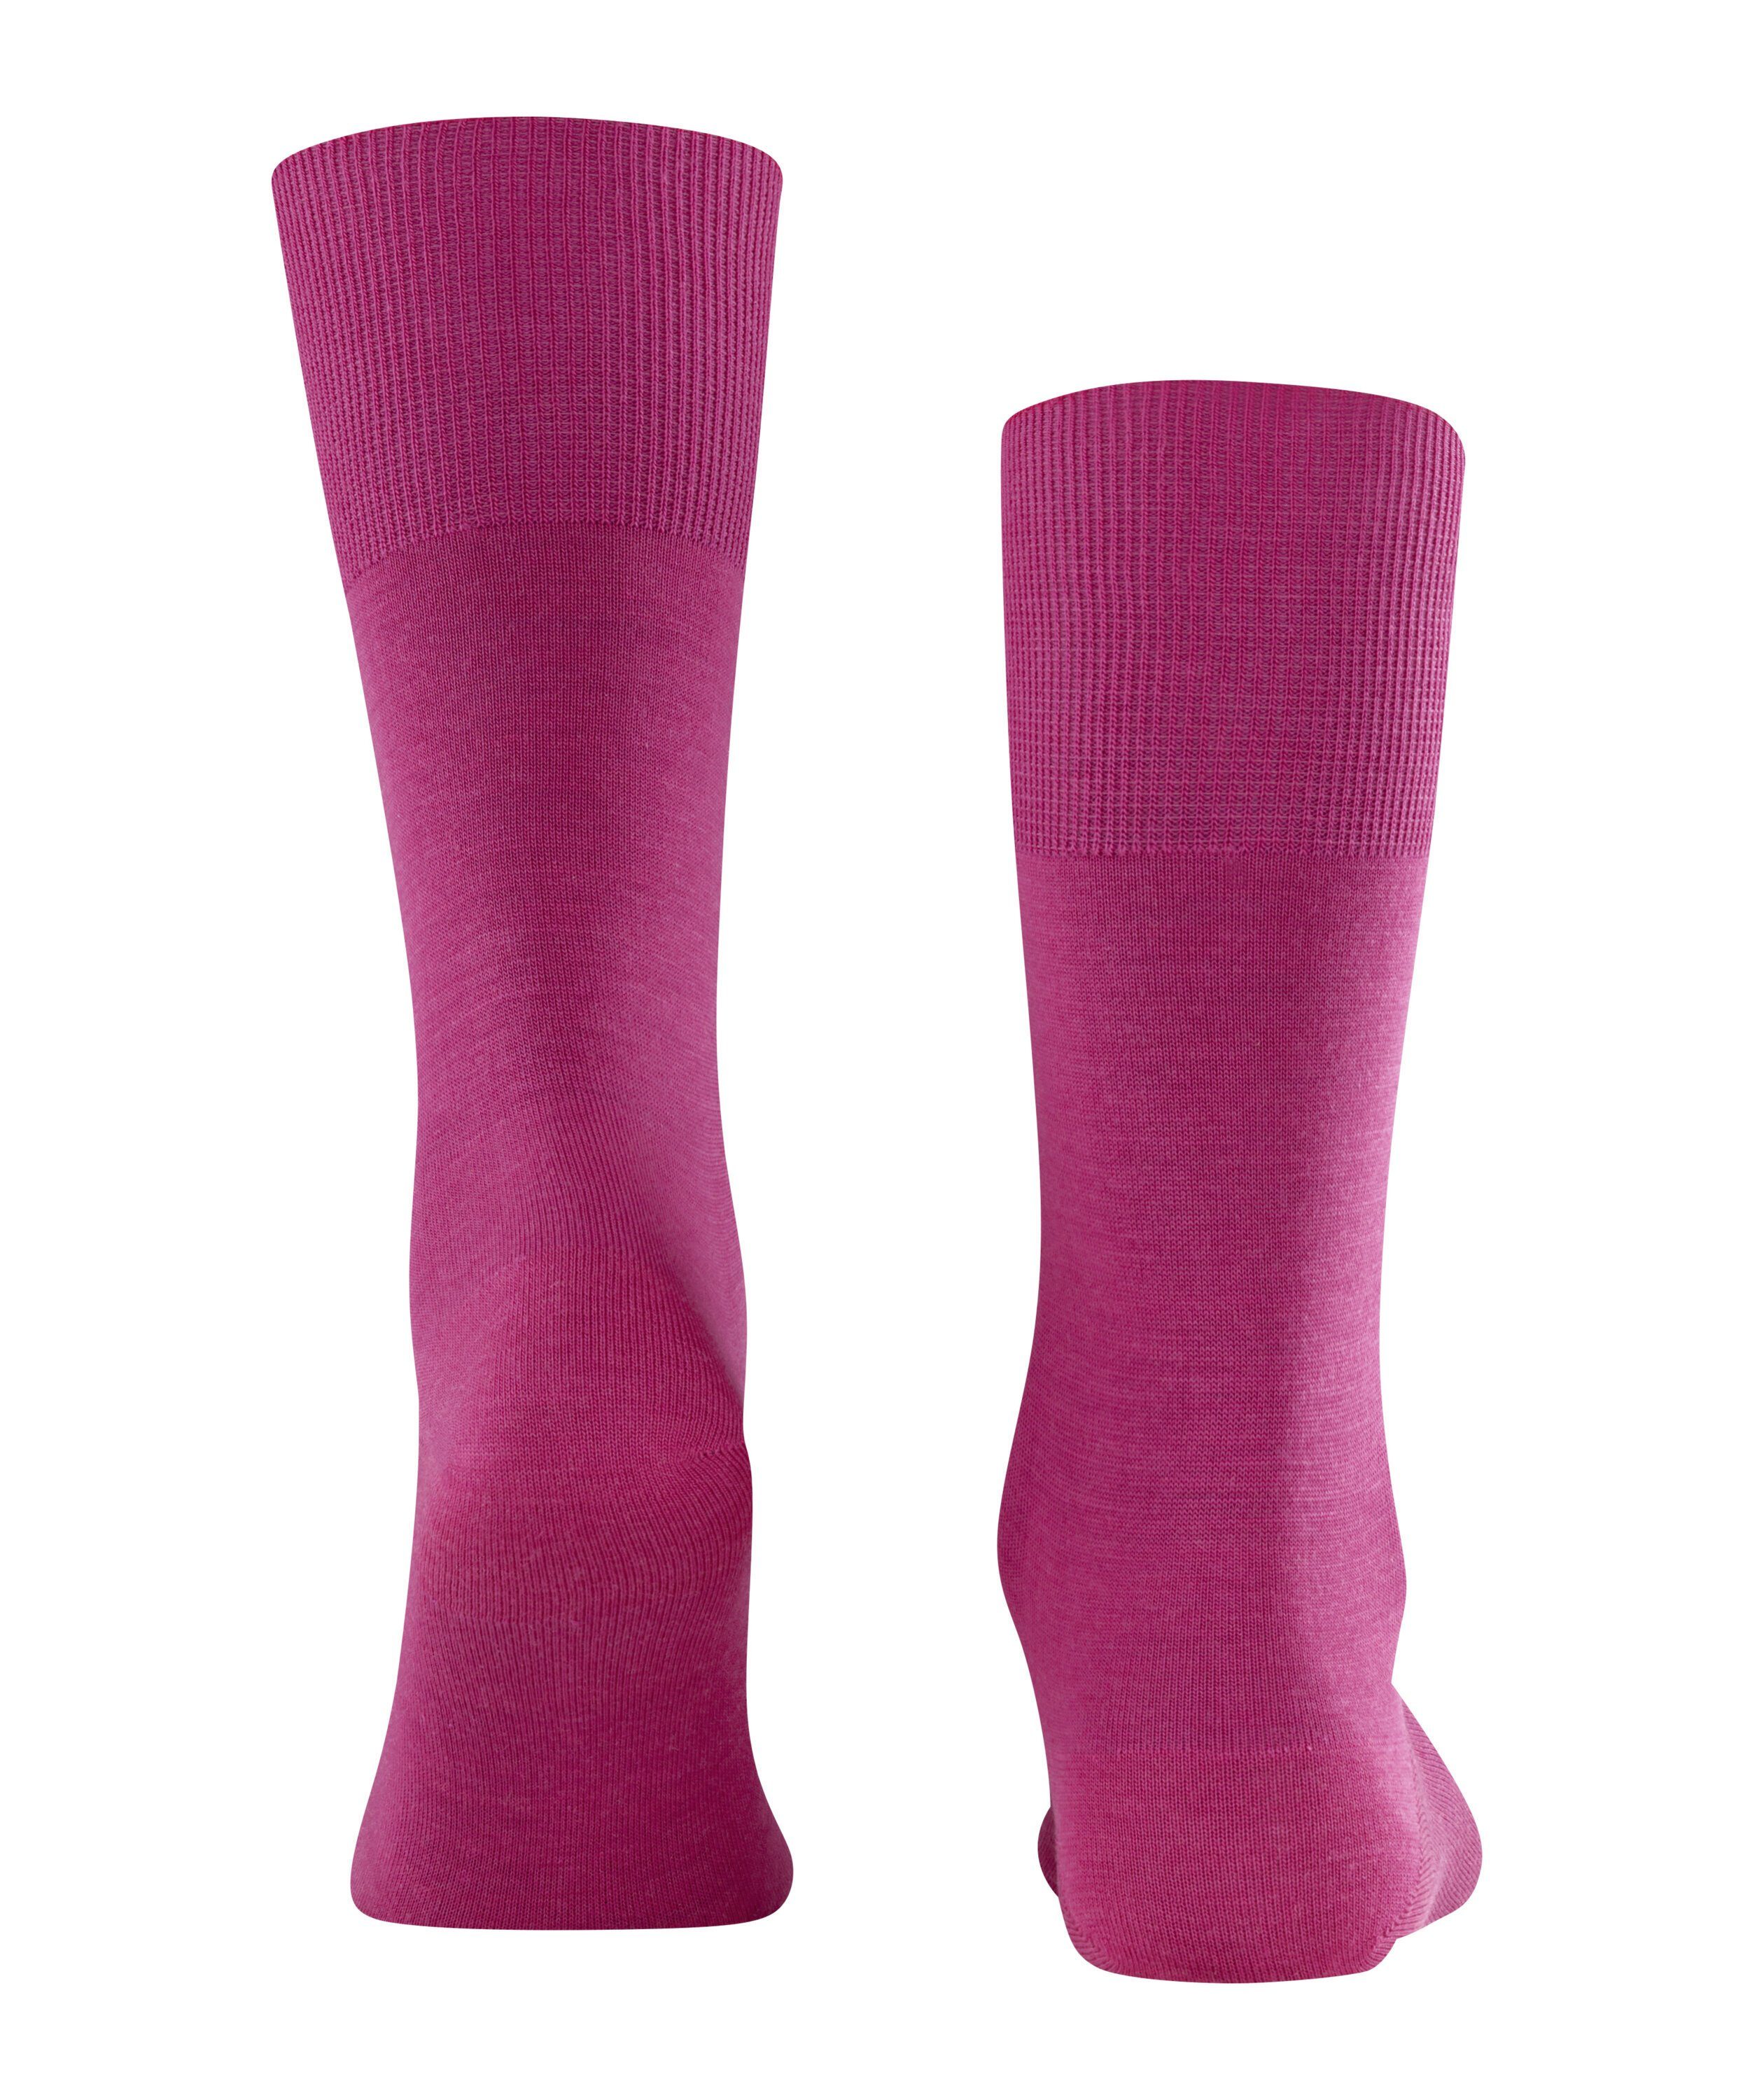 arctic (8233) FALKE Airport pink (1-Paar) Socken